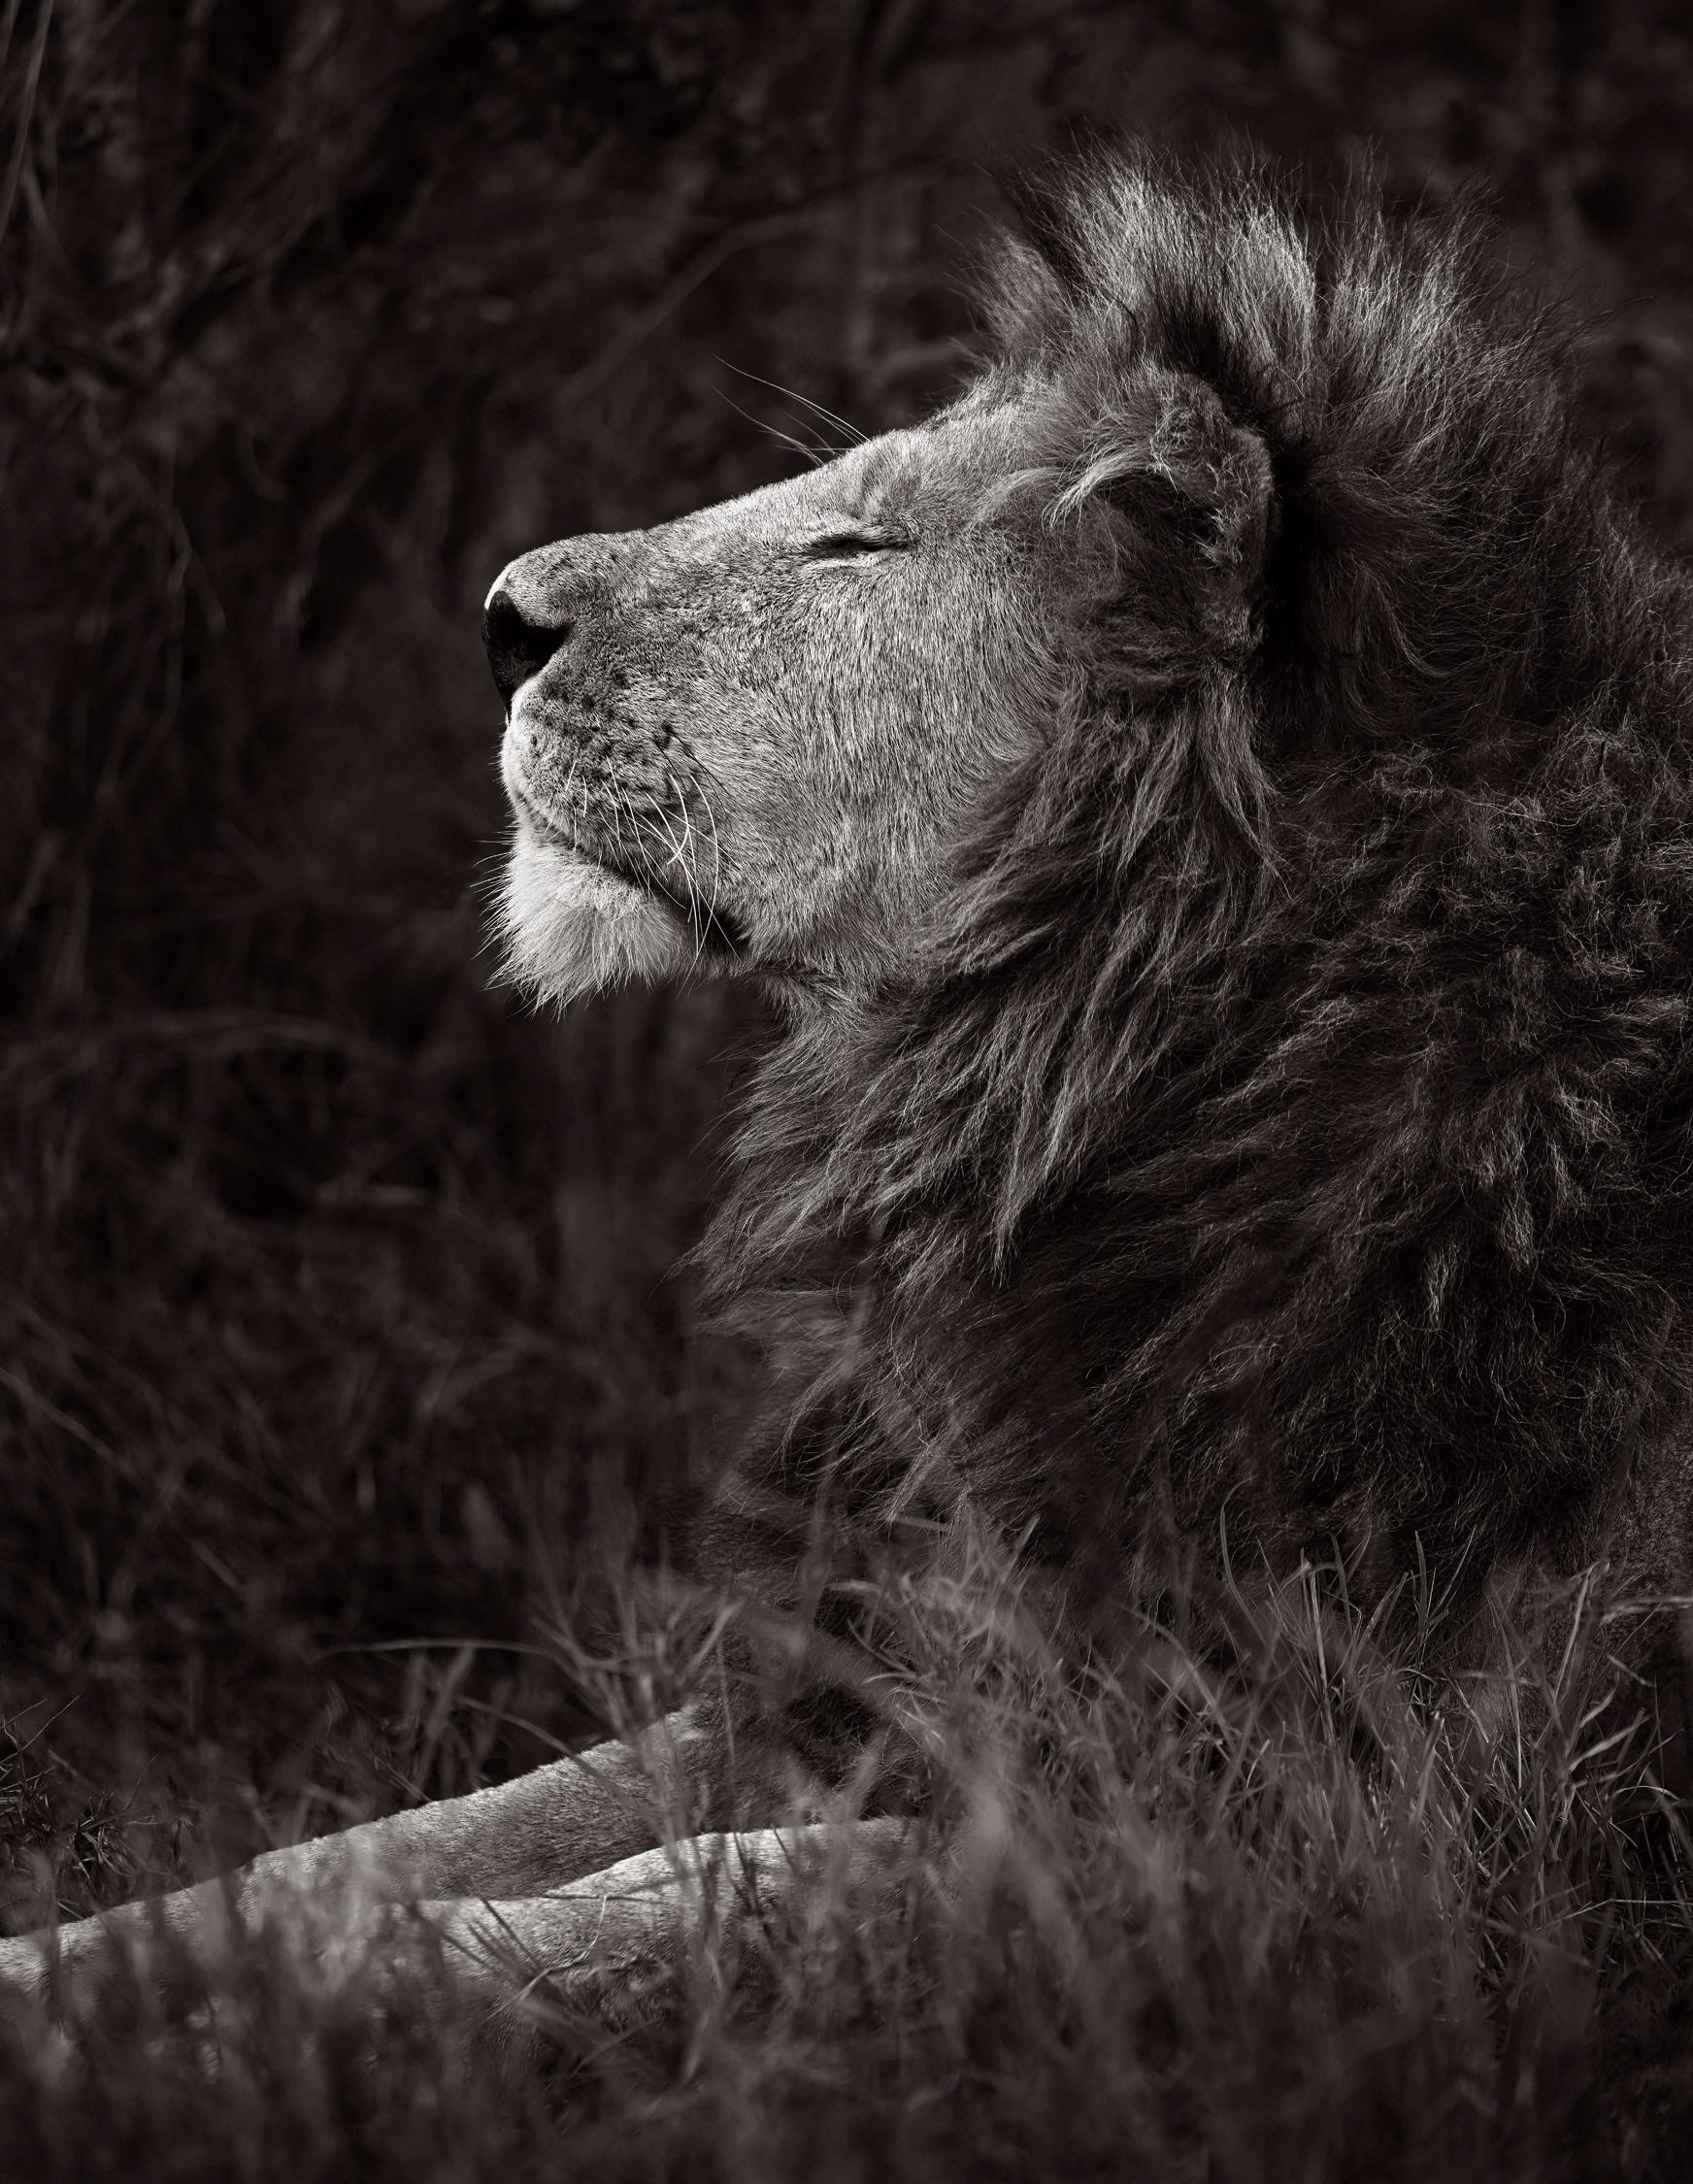 Drew Doggett Black and White Photograph – Porträt in Profile eines Löwen mit einem vollen Manne, der das Gras entspannt